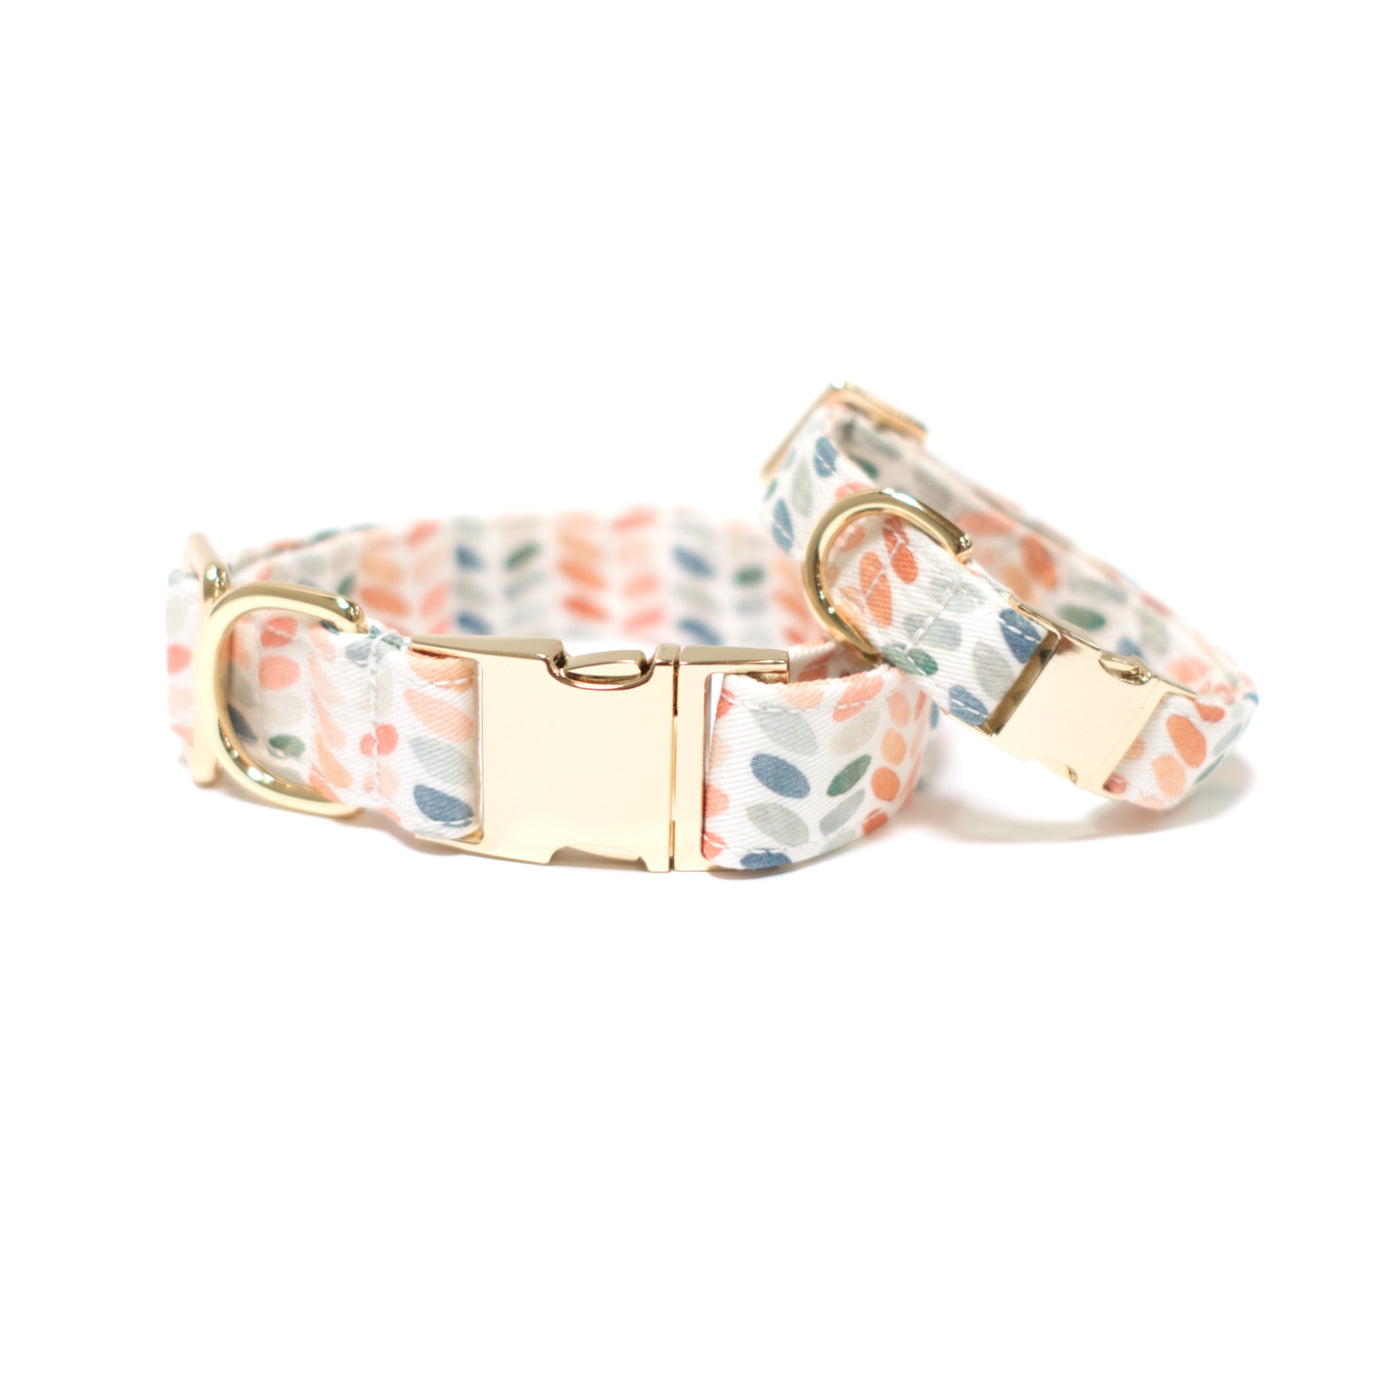 Polka dot dog collar with gold hardware